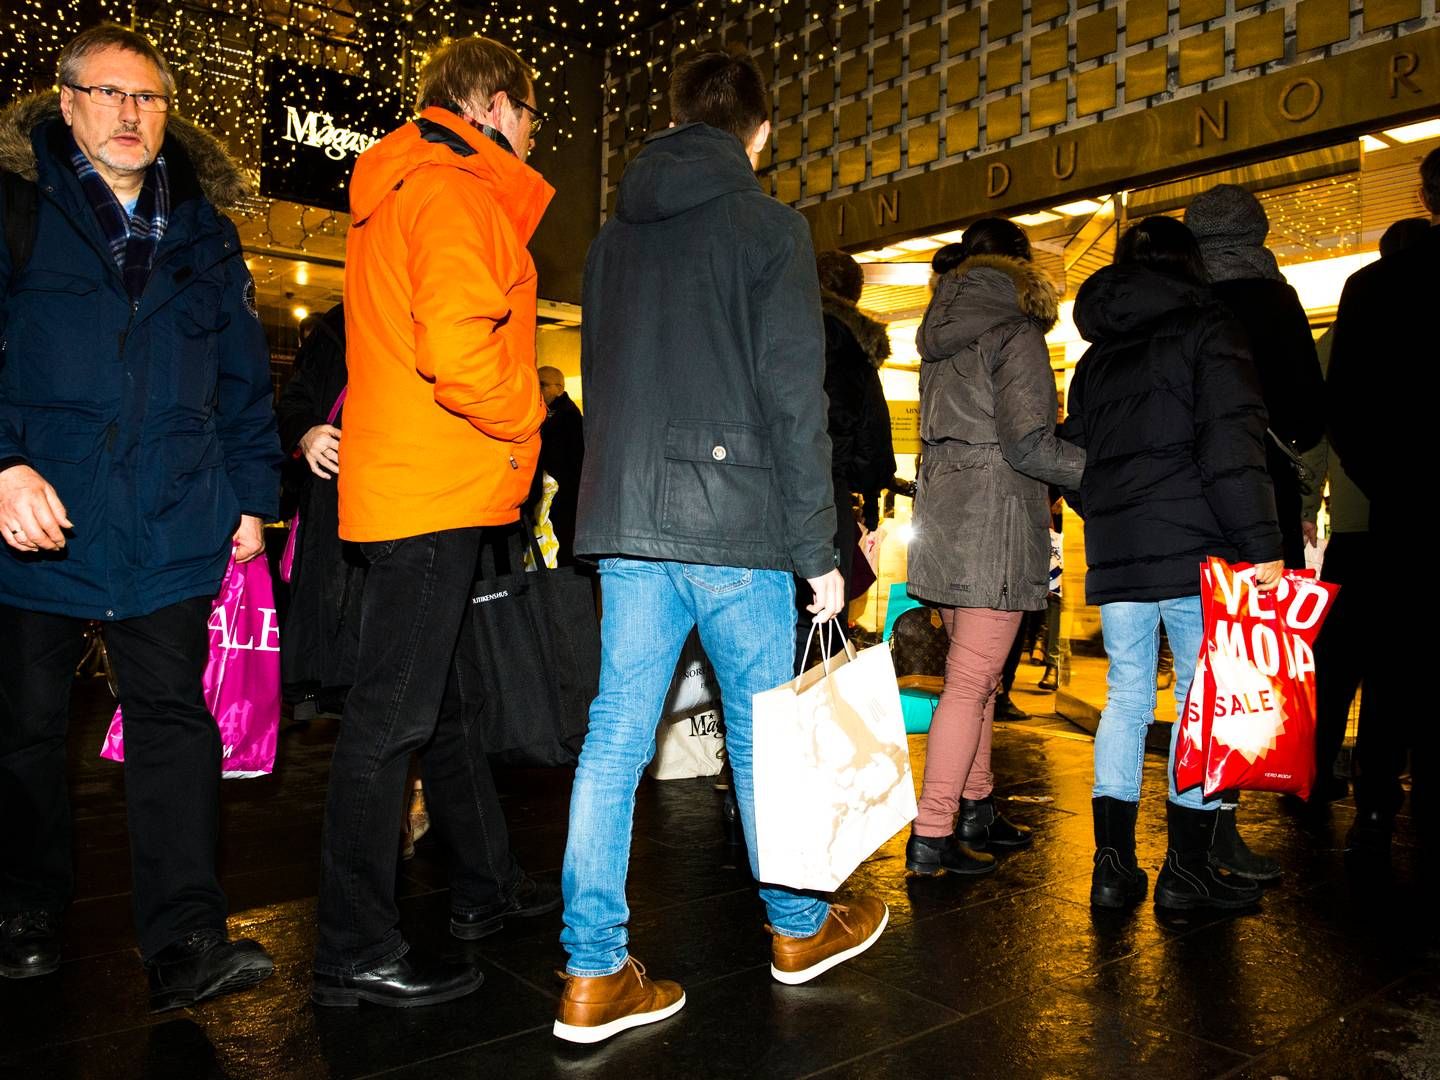 Det store bytteræs af julegaver er skudt i gang, og det giver forventet travlhed i butikkerne. | Foto: Jesper Mortensen